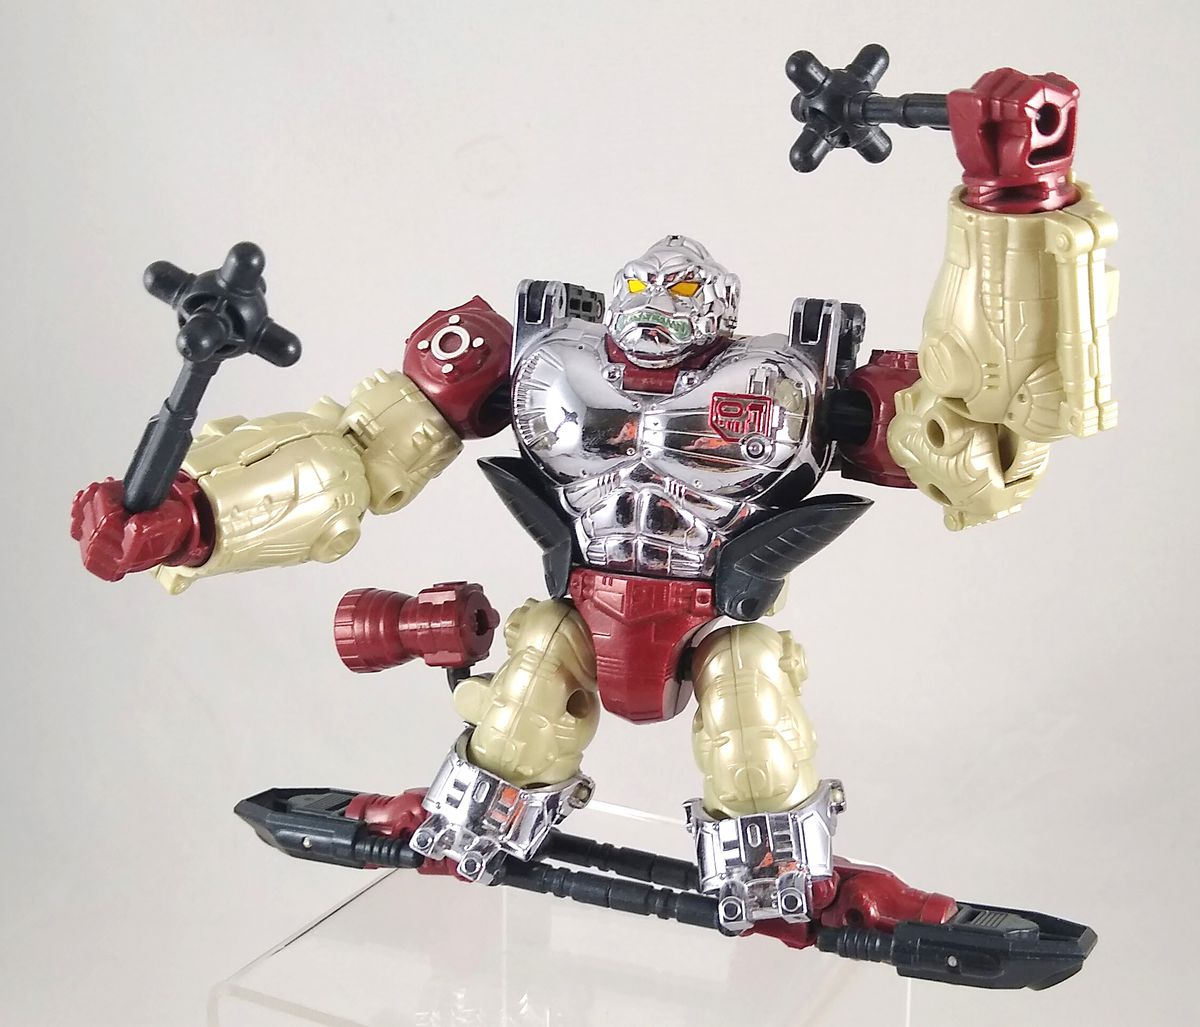 Une photo d'un jouet Transformers exclusif à la convention Apelinq, un singe en métal rouge, noir, argent et crème debout sur un hoverboard noir et brandissant des masses noires